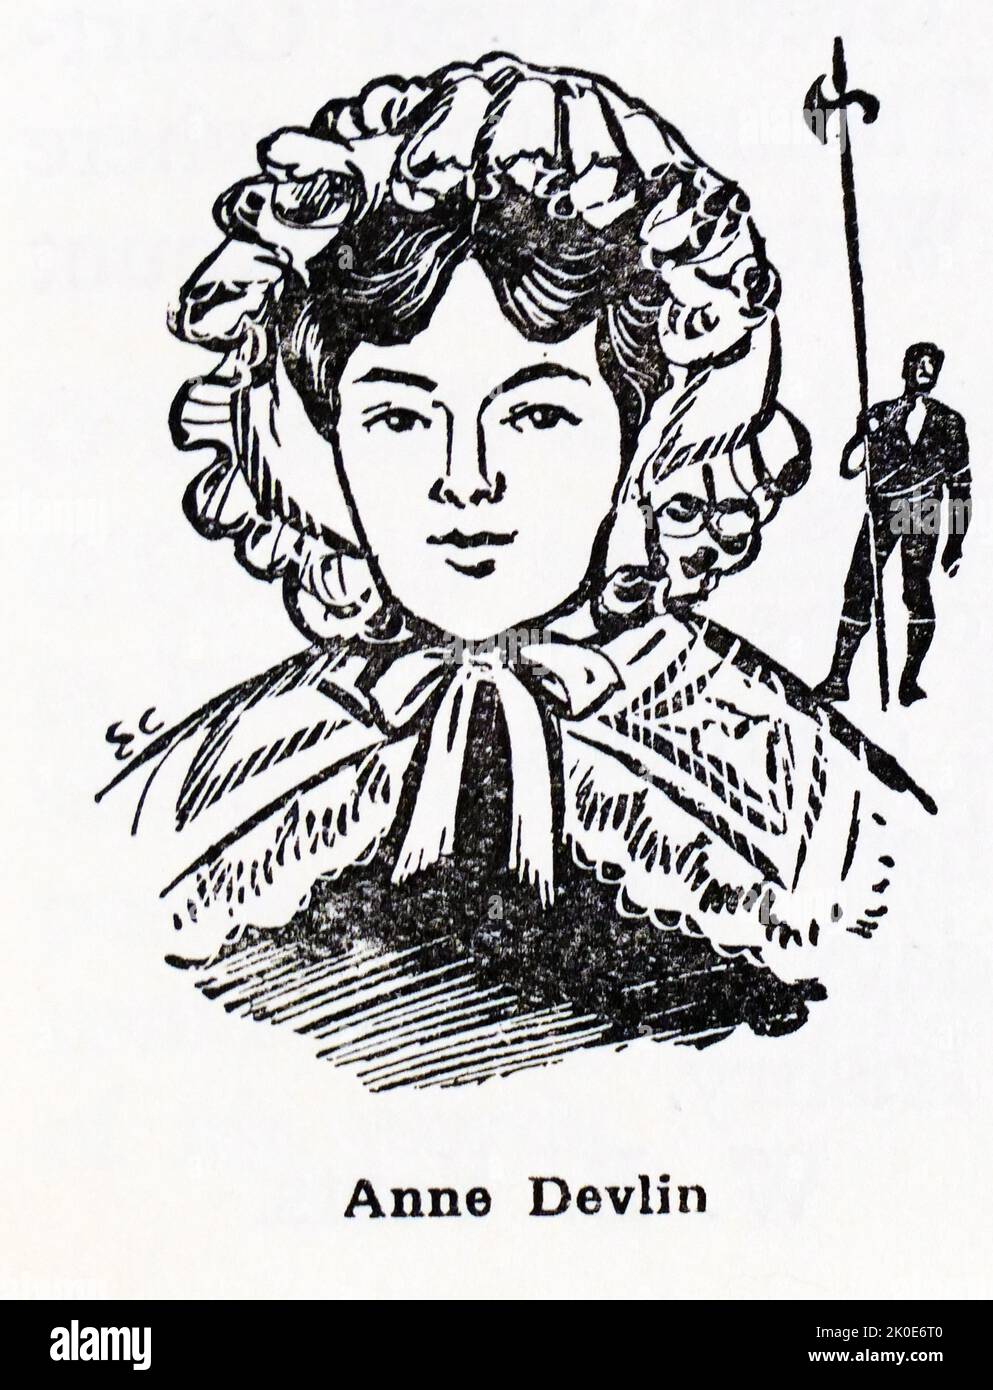 Anne Devlin (1780. - 1. September 1851) war eine irische Republikanerin, die für ihre Verstrickung mit den Vereinigten Iren berühmt war und unter schrecklichen Bedingungen und Folter durch die britischen Behörden inhaftiert wurde. Sie agierte in der nominalen unbezahlten Rolle der Haushälterin, war aber wirklich eine Mitverschwörerin von Robert Emmet und war auch eine Cousine von zwei führenden irischen Rebellen, Michael Dwyer und Arthur Devlin. Stockfoto